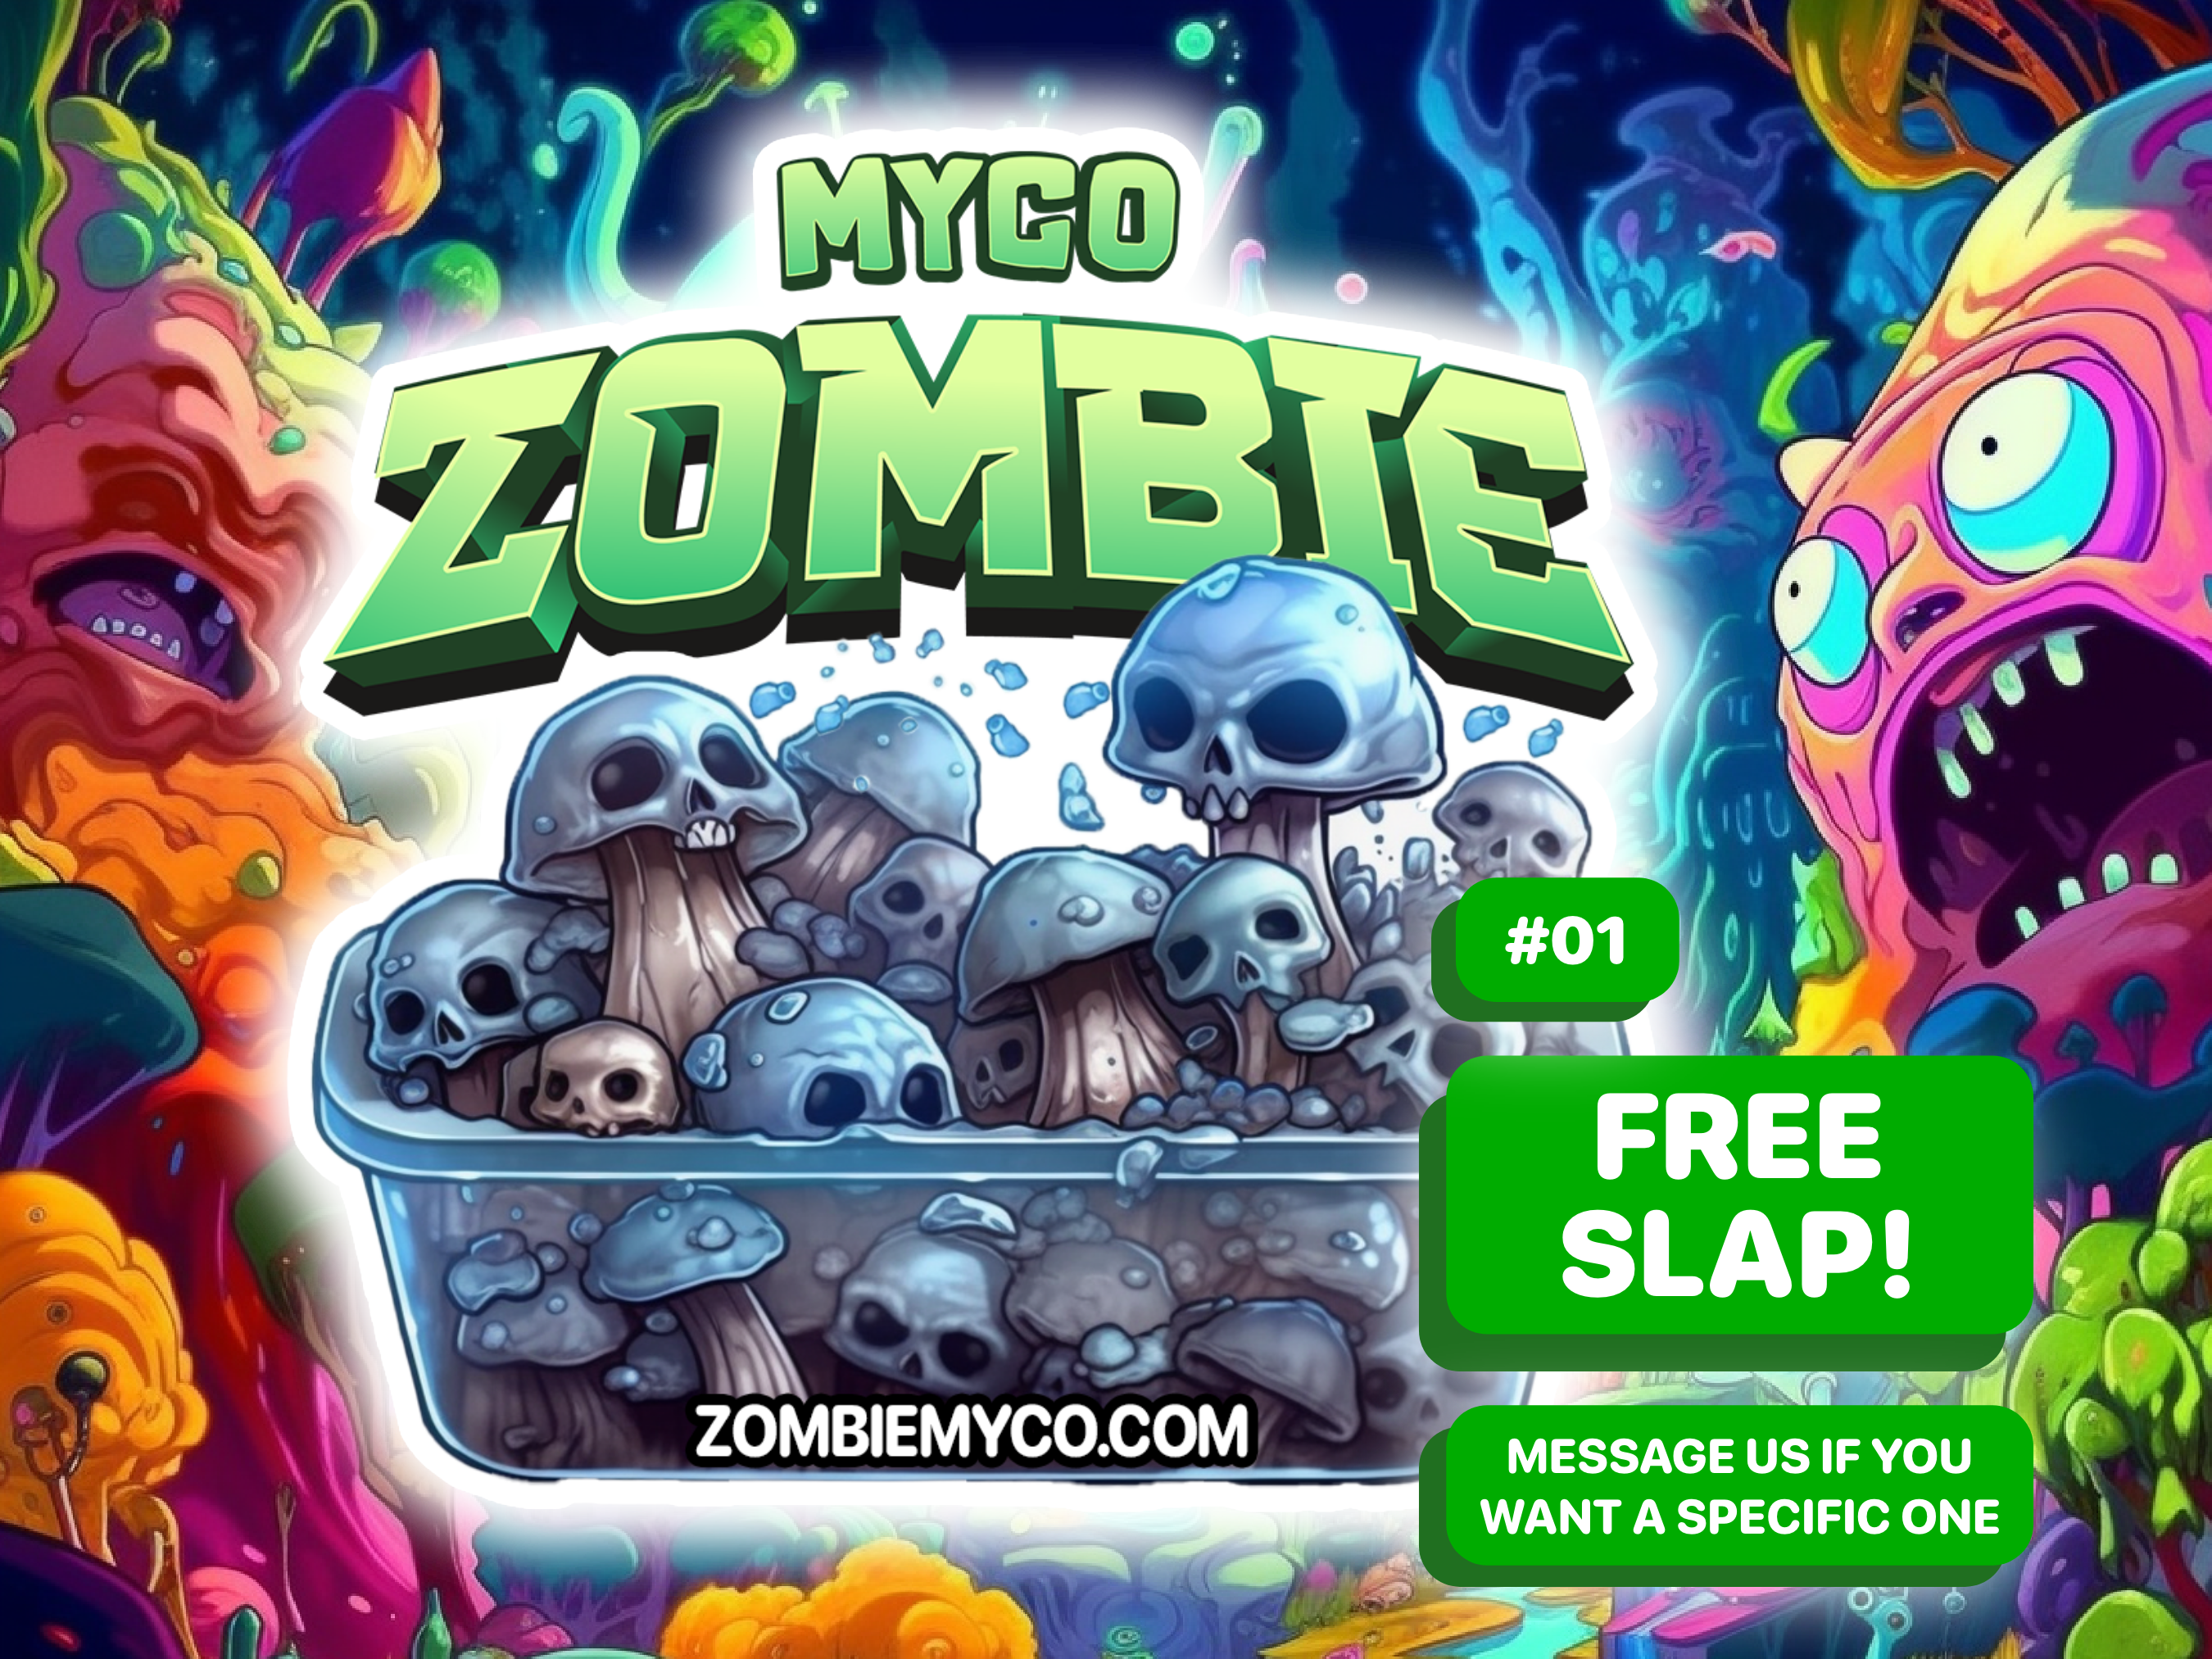 design #1 zombiemyco! FREE SLAP! FREE STICKER!